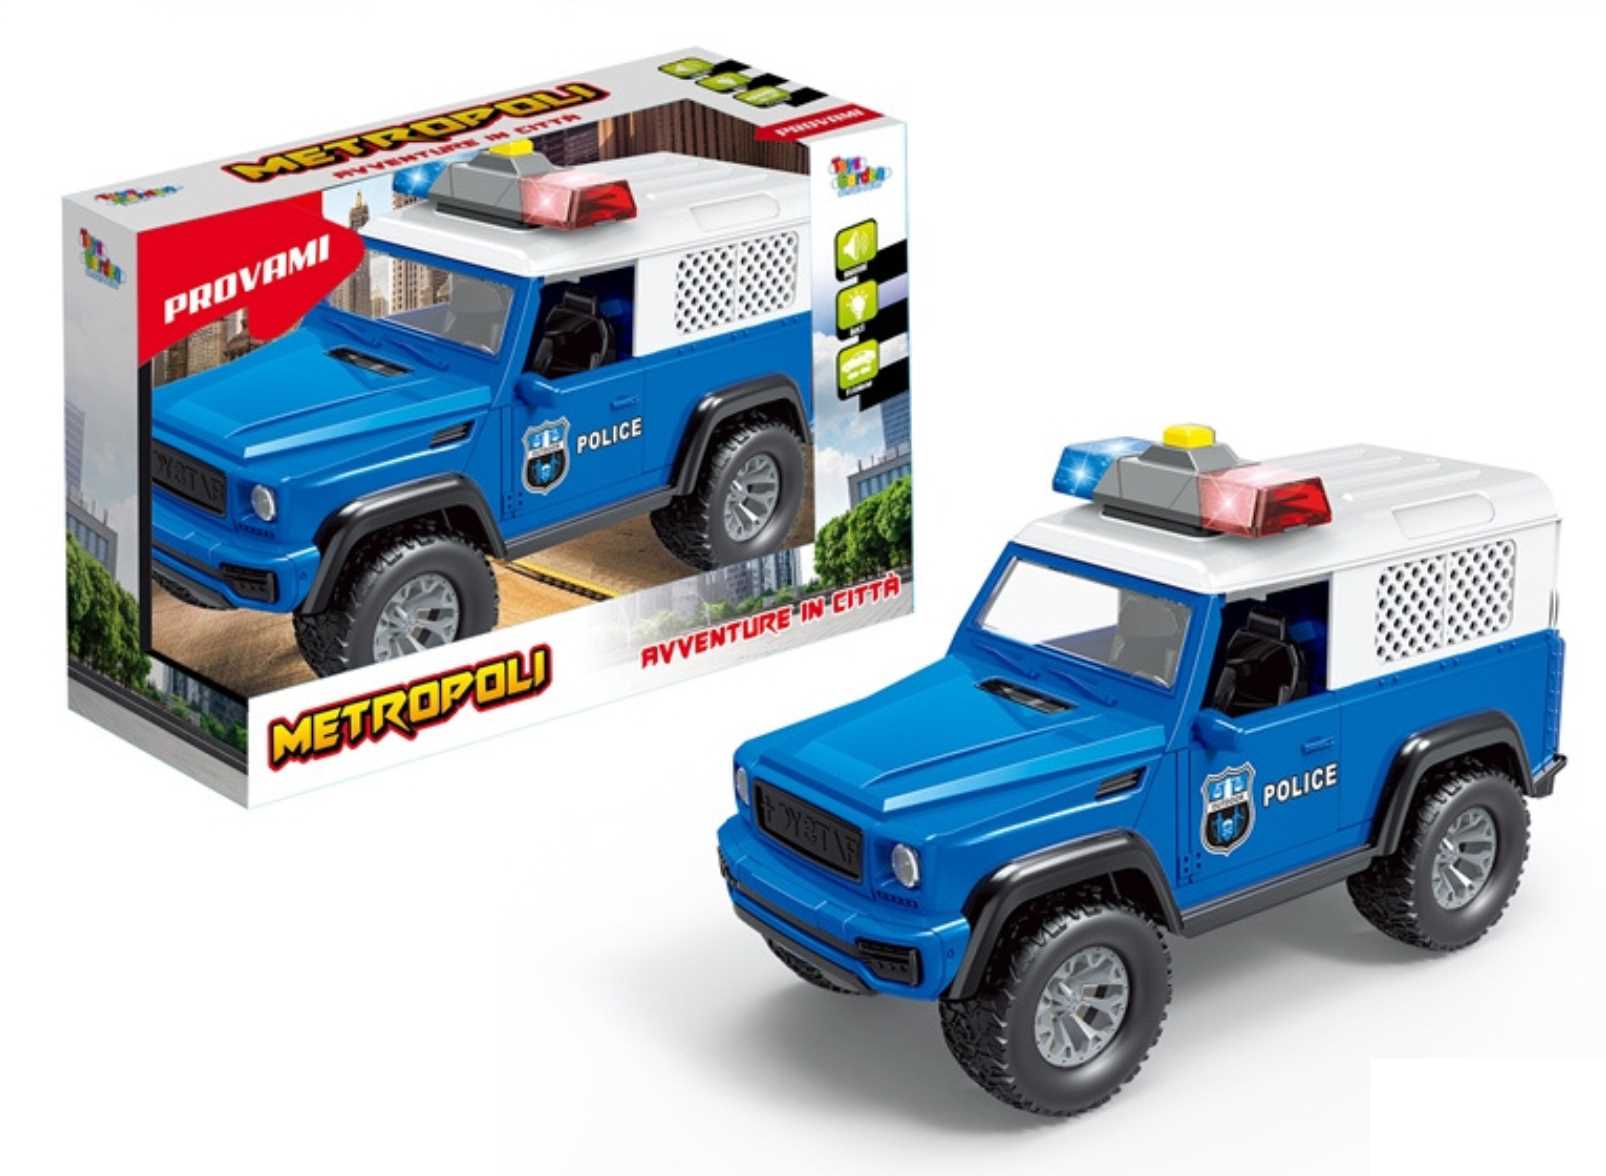 28012 - Toys Garden - METROPOLI POLICE SUV